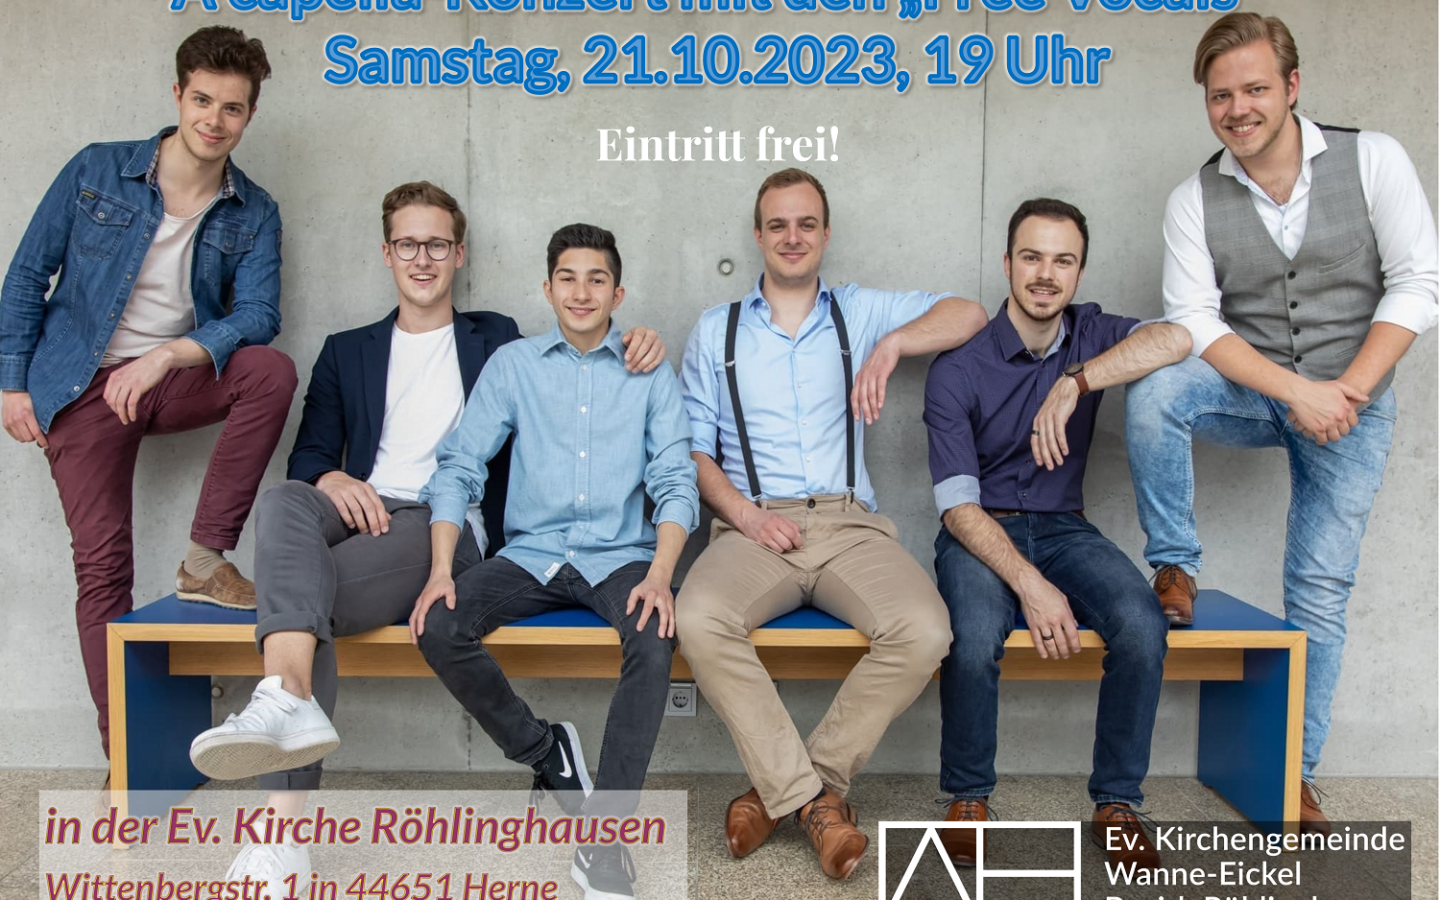 A capella-Konzert mit den Free Vocals am 21.10.2023, 19 Uhr in der Ev. Kirche Röhlinghausen